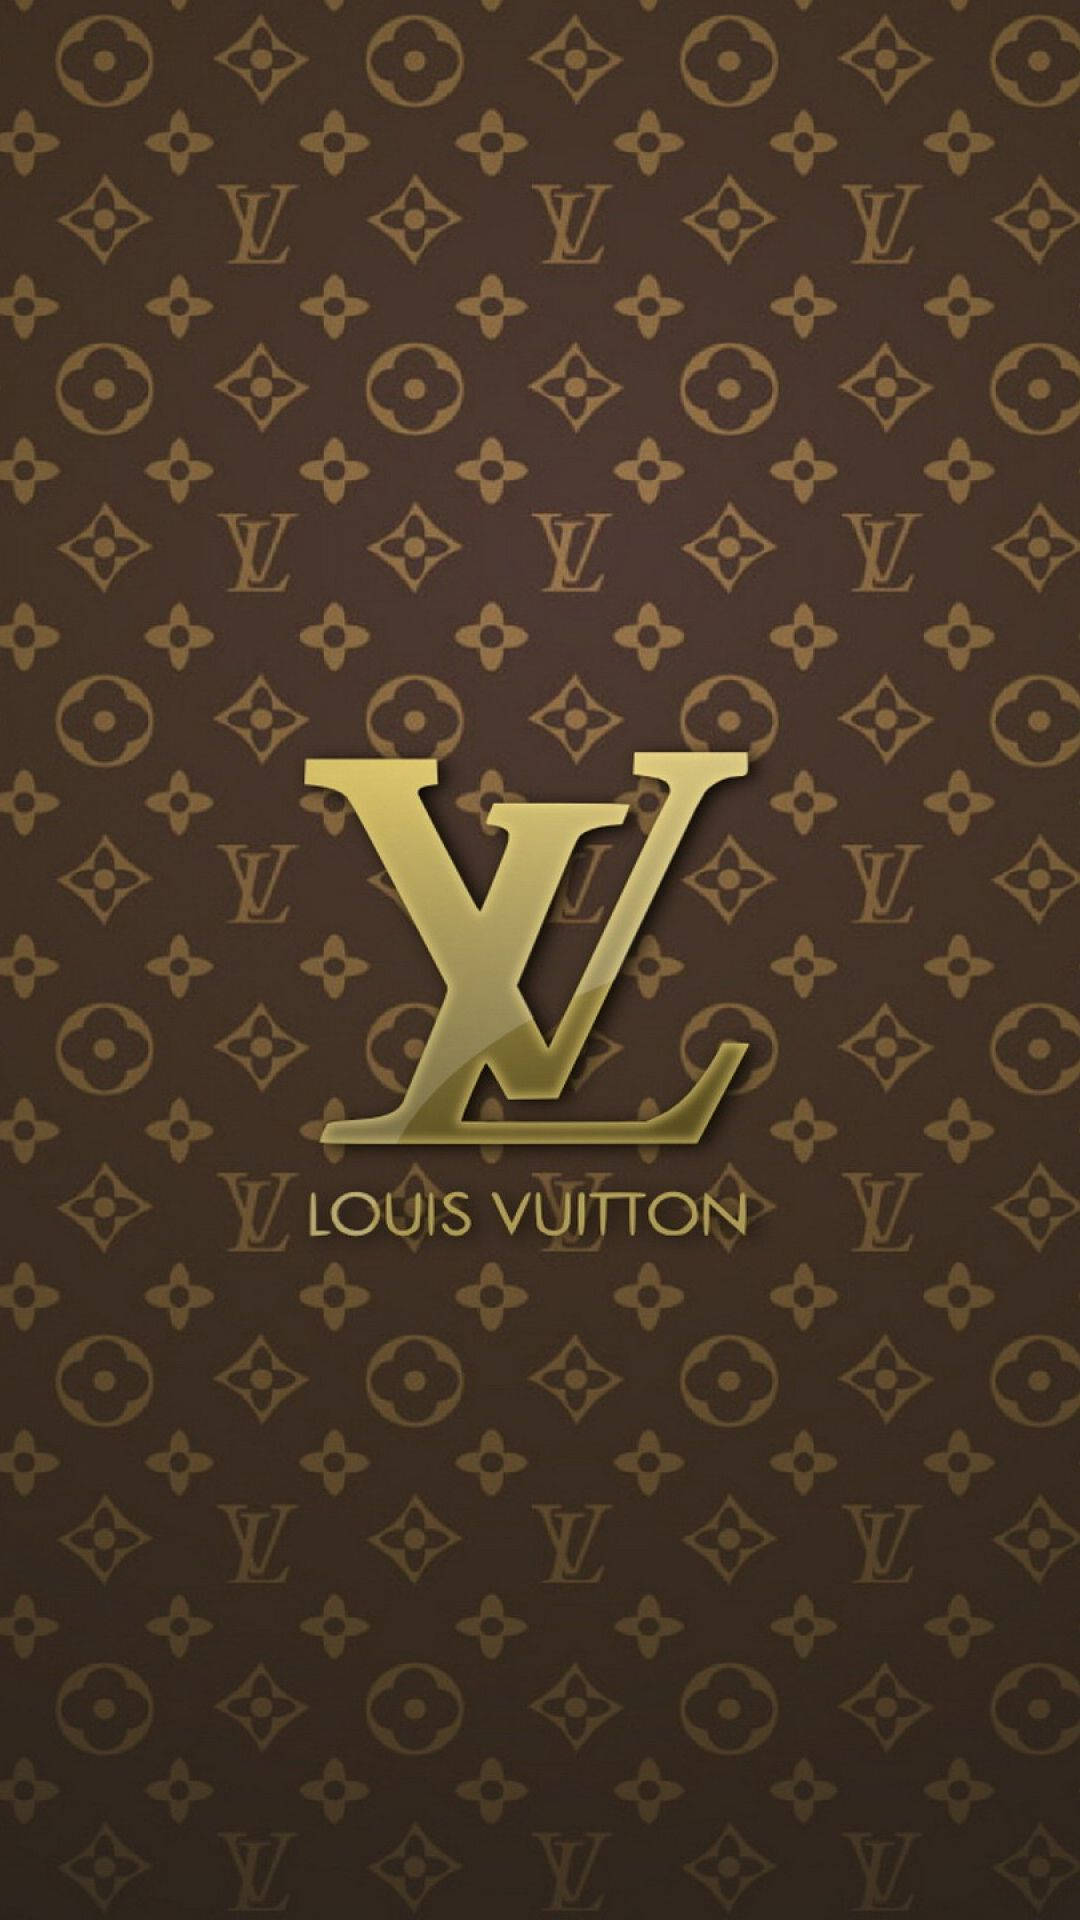 Đến với Louis Vuitton, bạn sẽ được trải nghiệm những sản phẩm sang trọng, tinh tế và đẳng cấp. Từ chiếc túi xách đến phụ kiện đi kèm, tất cả đều thể hiện sự hoàn mỹ và đẳng cấp của nhãn hiệu này.